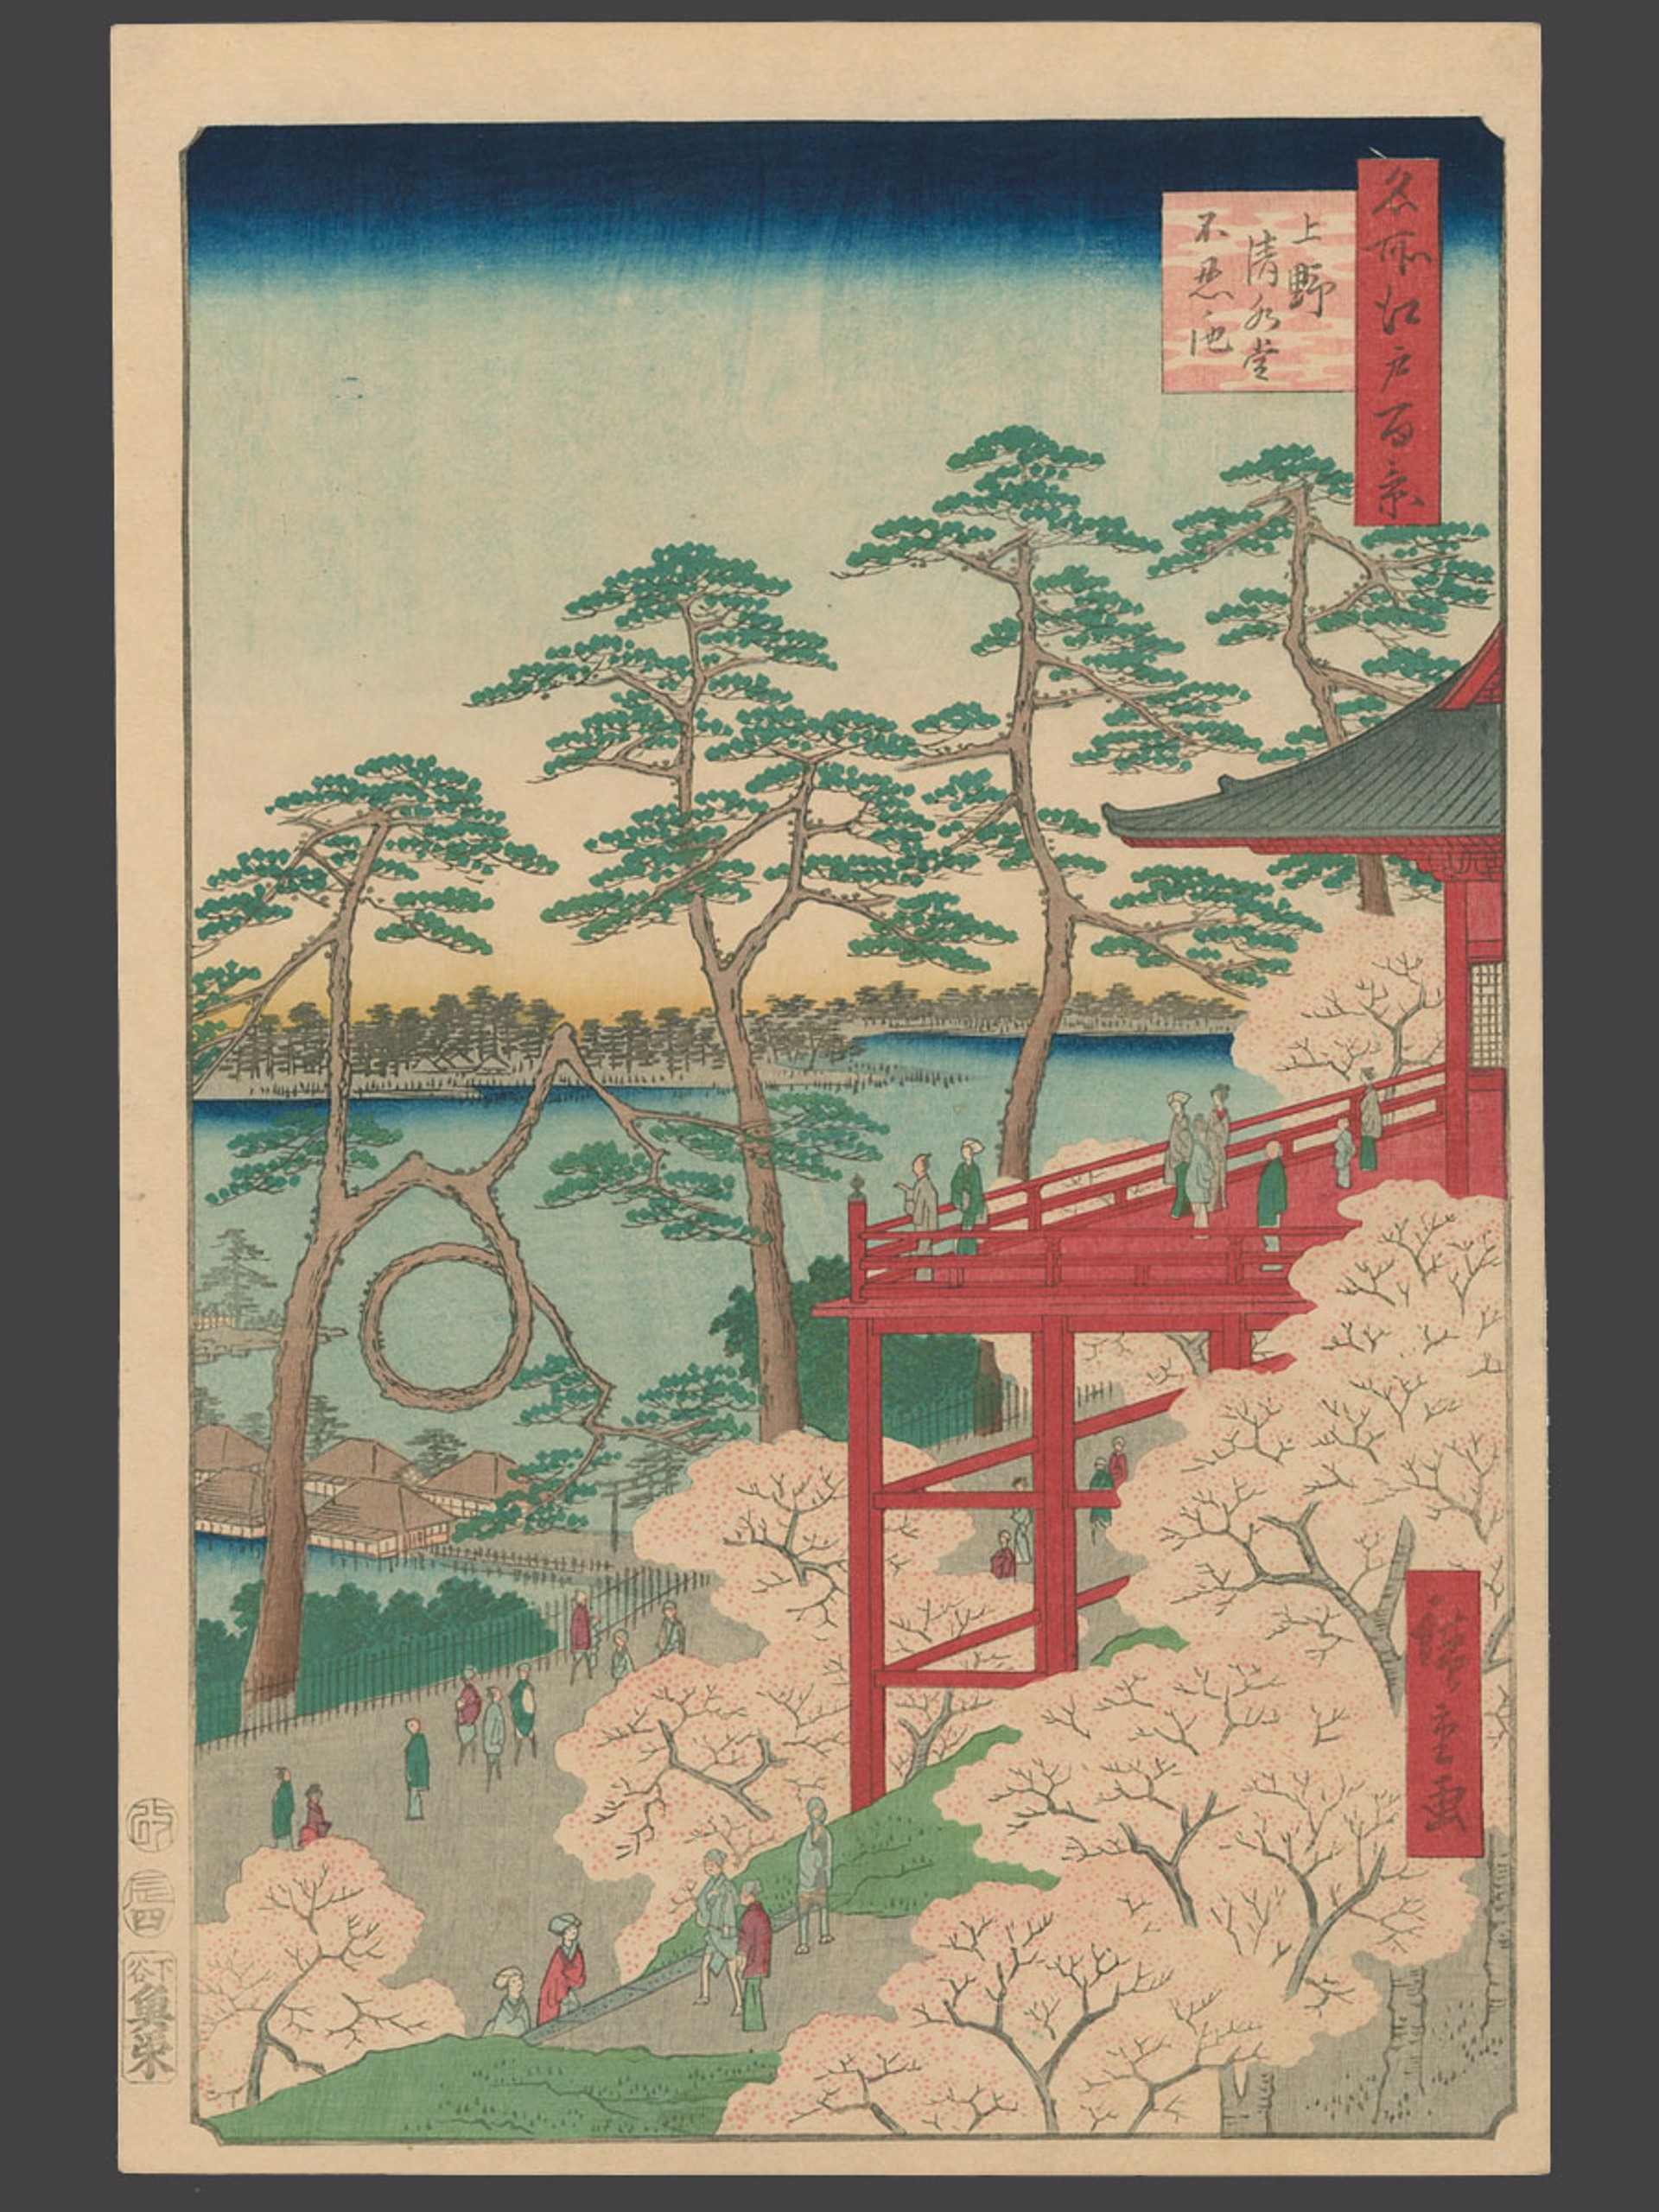 #11 Kiyomizu Hall and Shinobazu Pond at Ueno 100 Views of Edo by Hiroshige